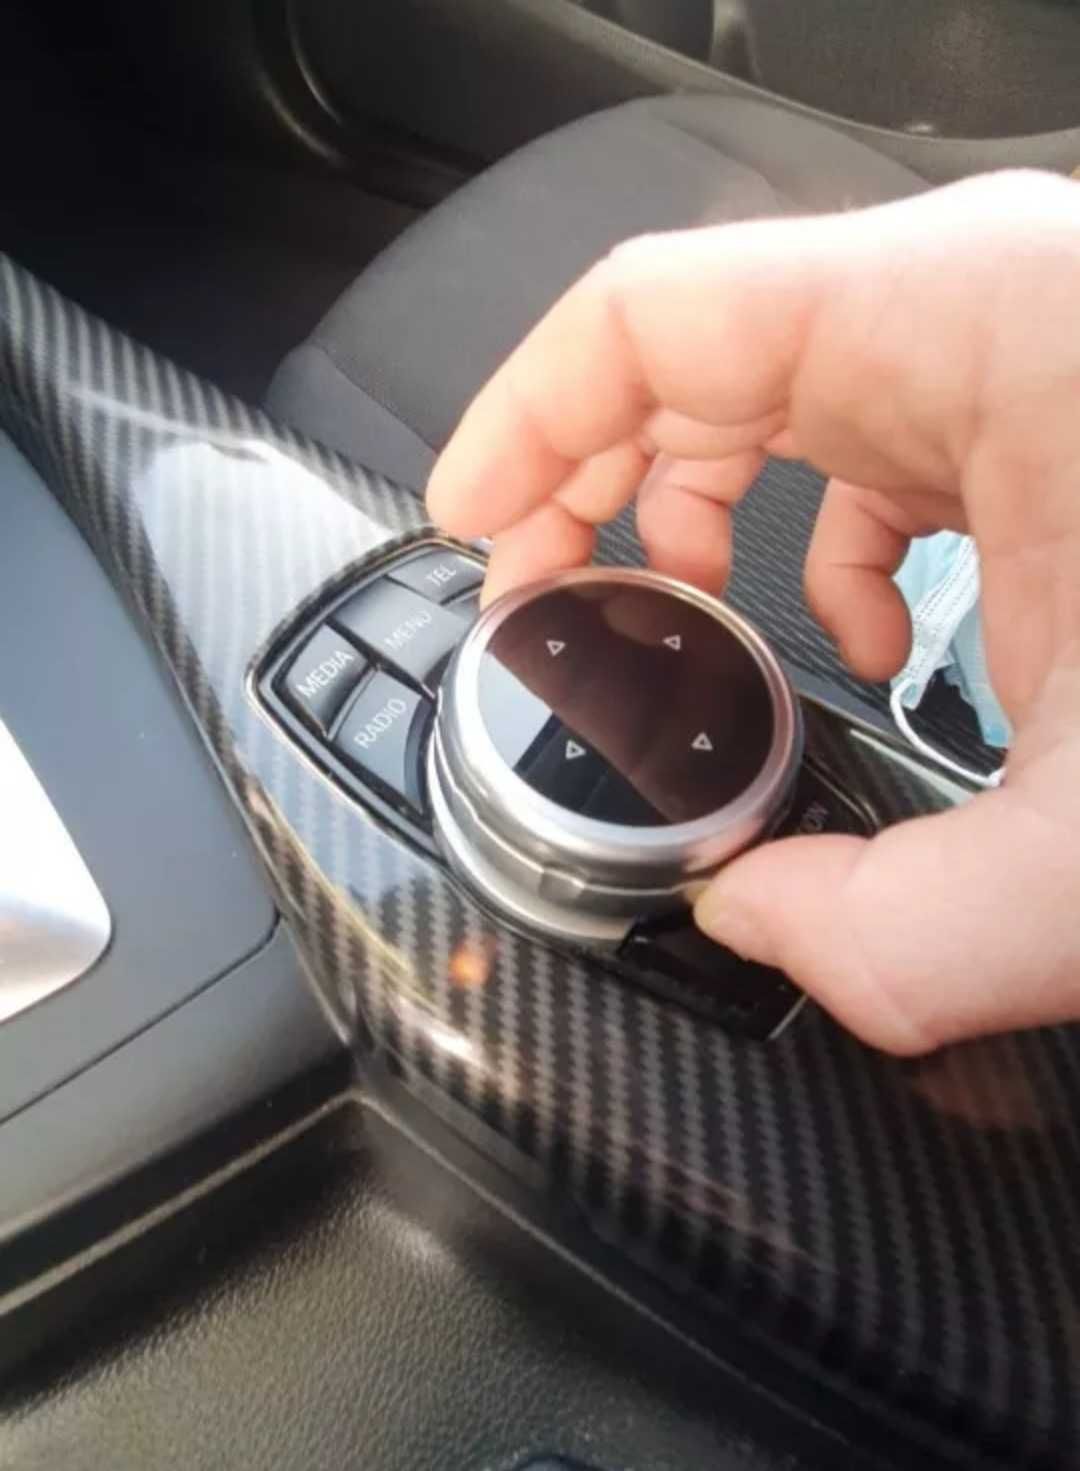 Врътка за джойстика на навигацията БМВ BMW navi нави джойстик контрол